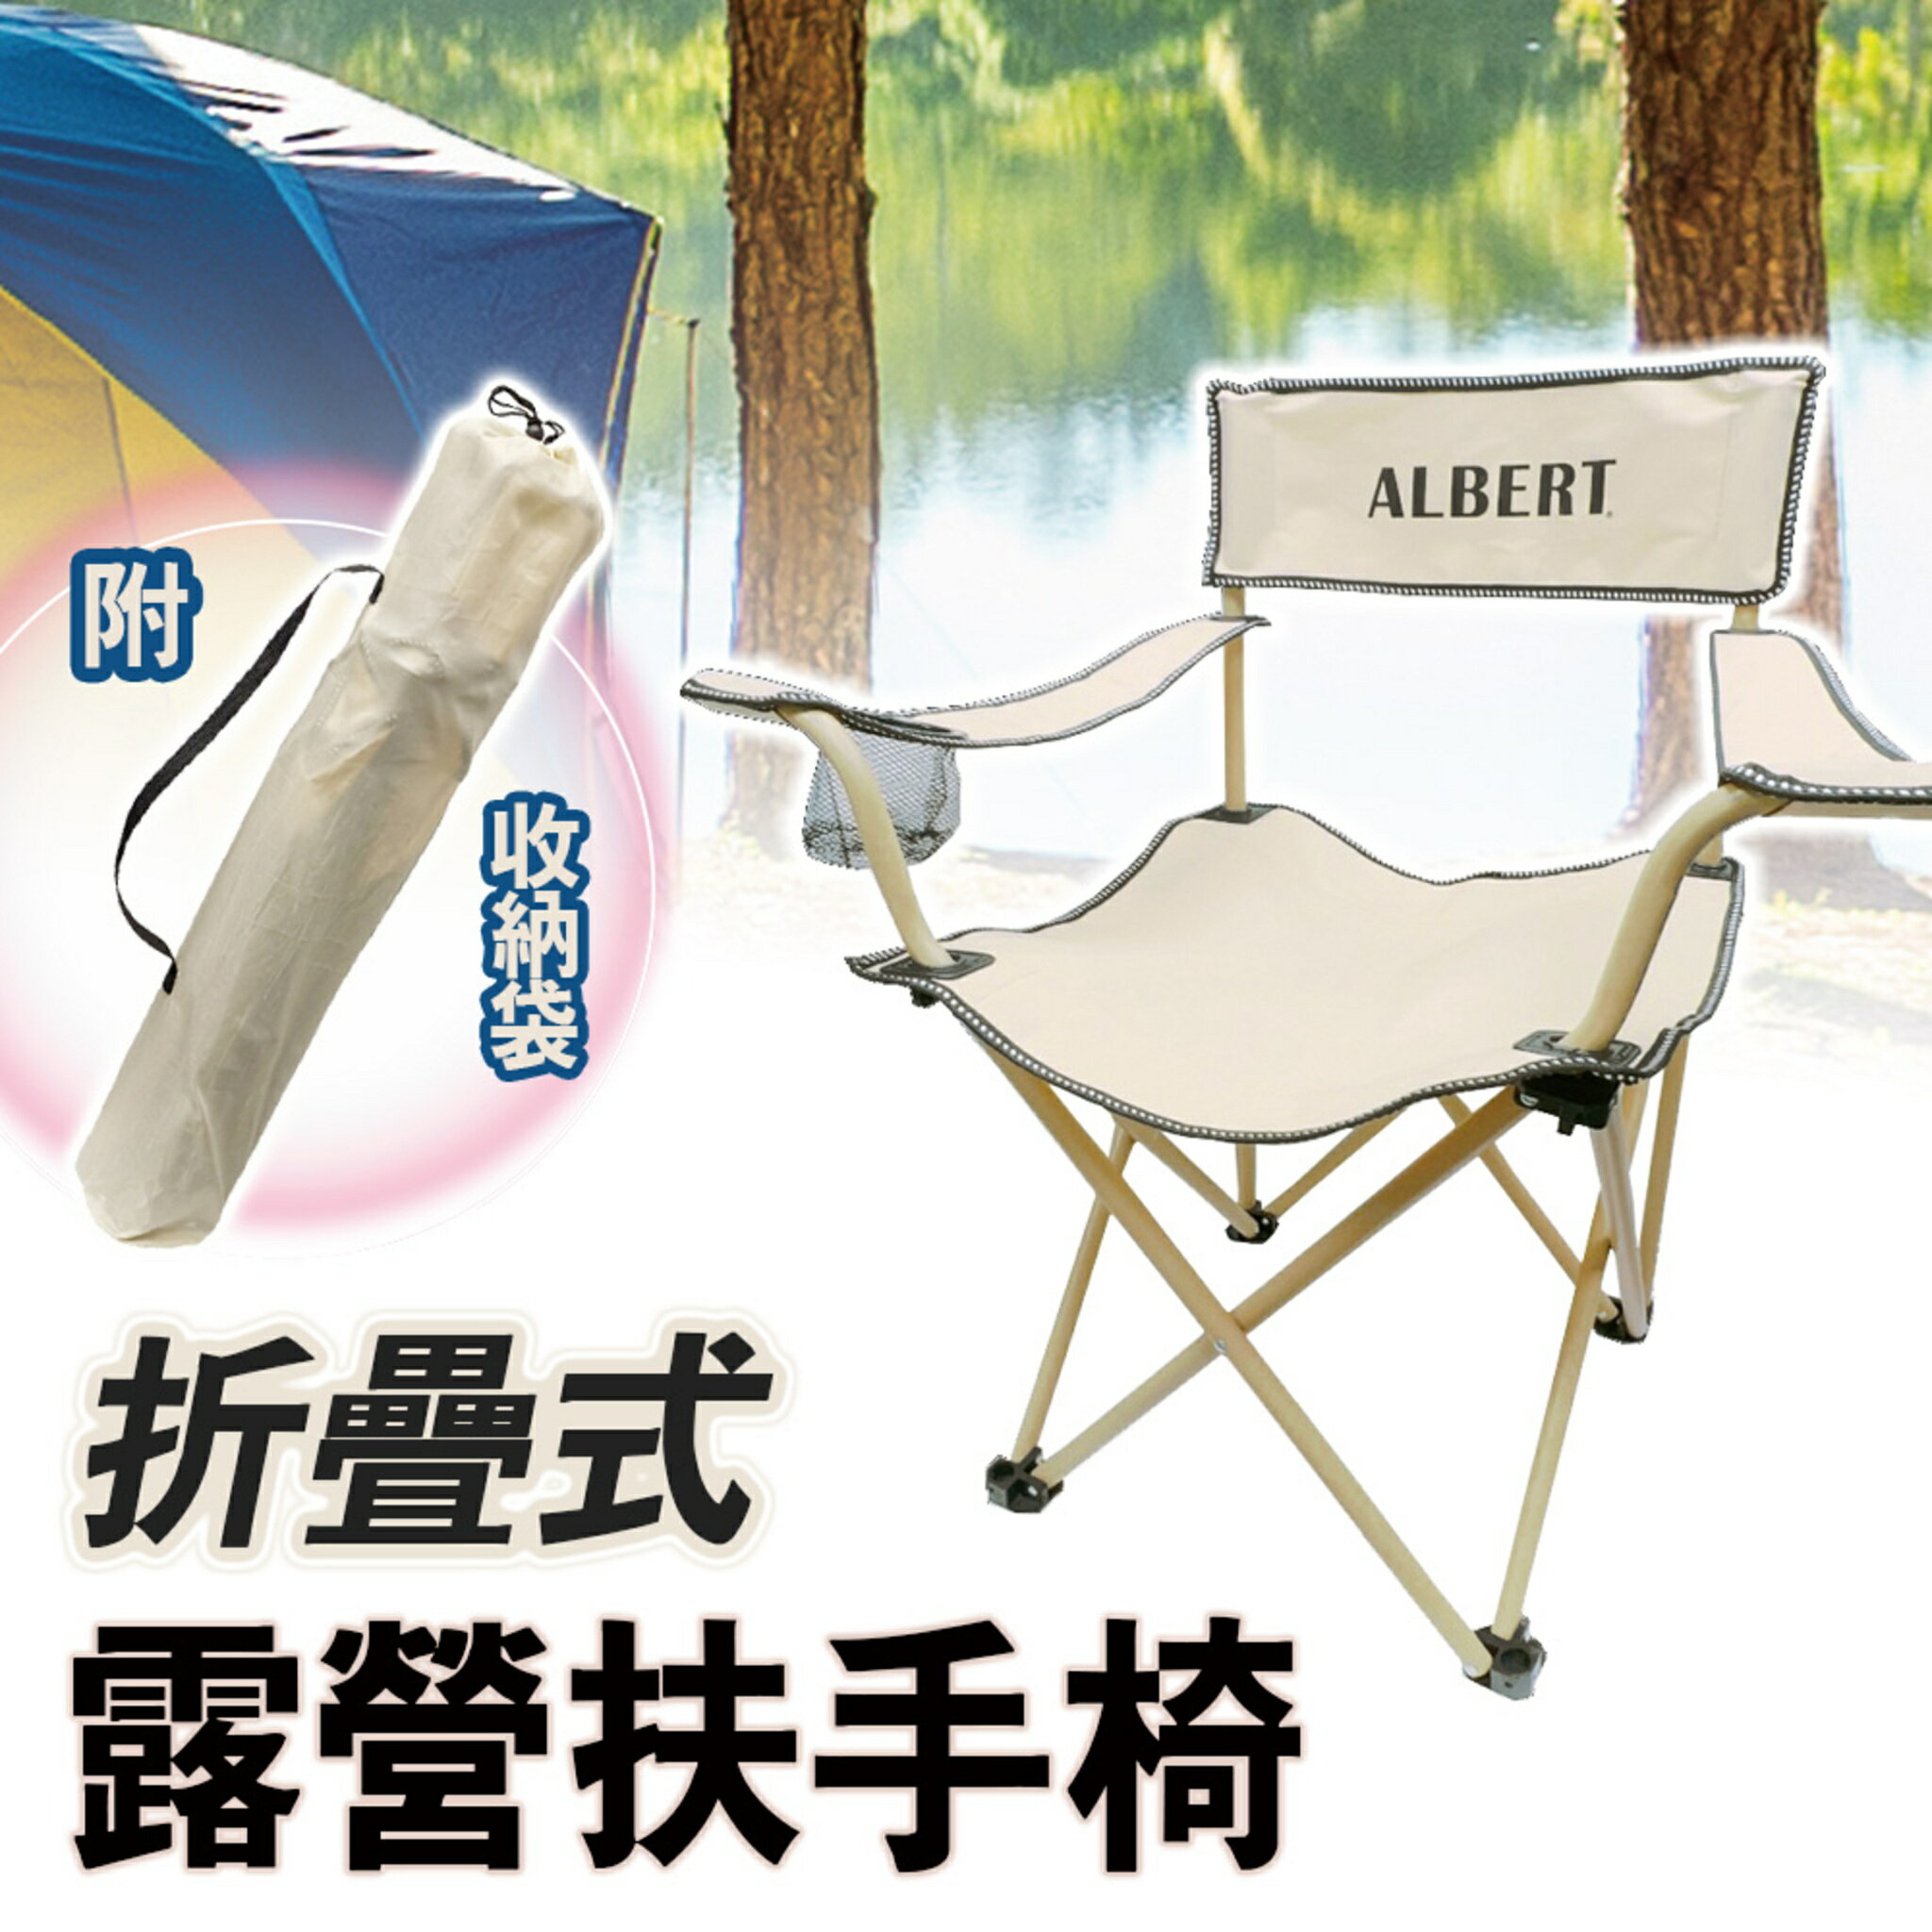 亞伯特 折疊式露營扶手椅 AL011